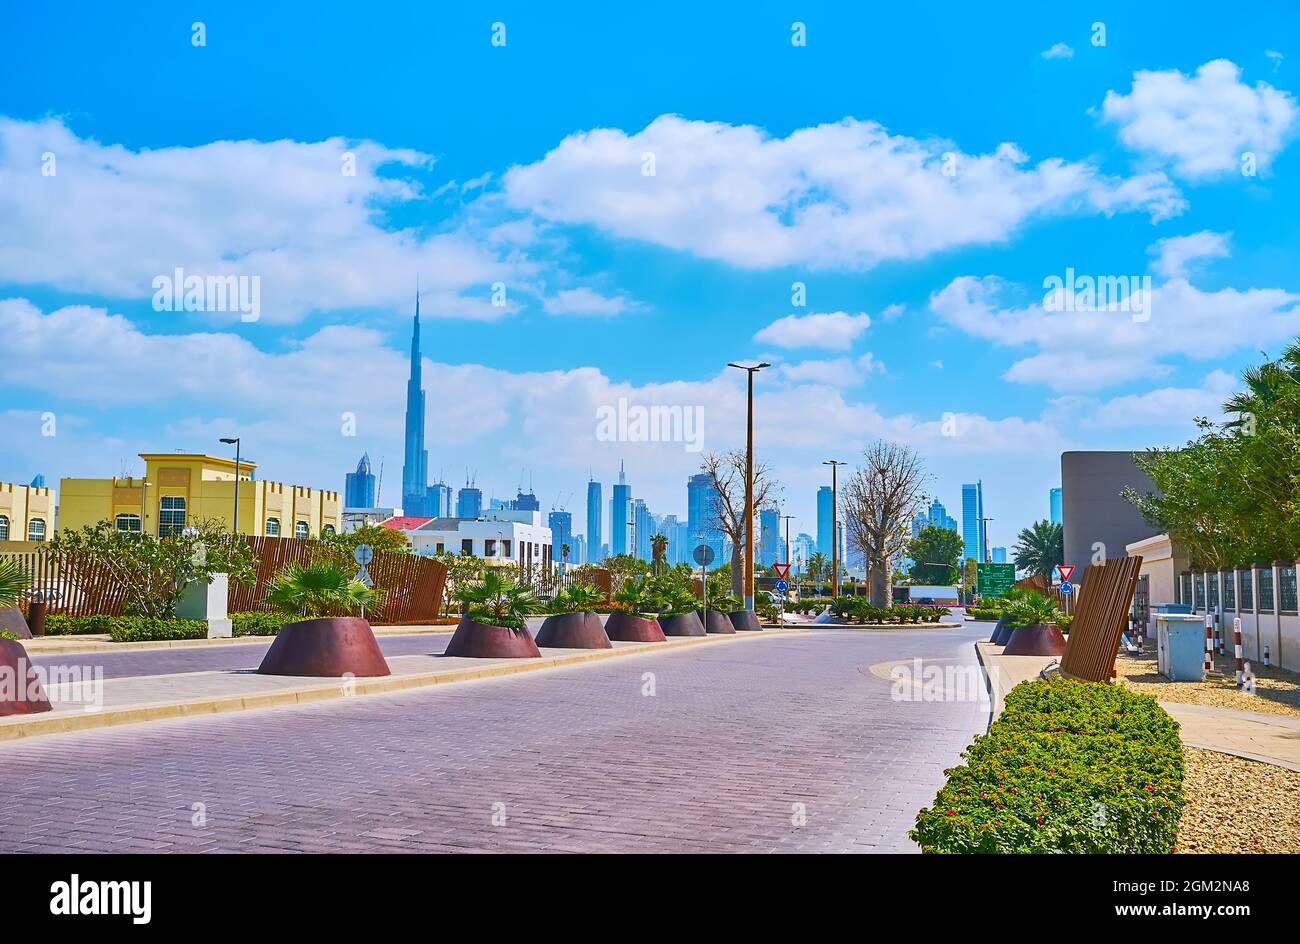 La strada panoramica e verde di Jumeirah è decorata con piante verdi e vanta la vista sull'iconico skyline di Dubai con Burj Khalifa e altri grattacieli Foto Stock